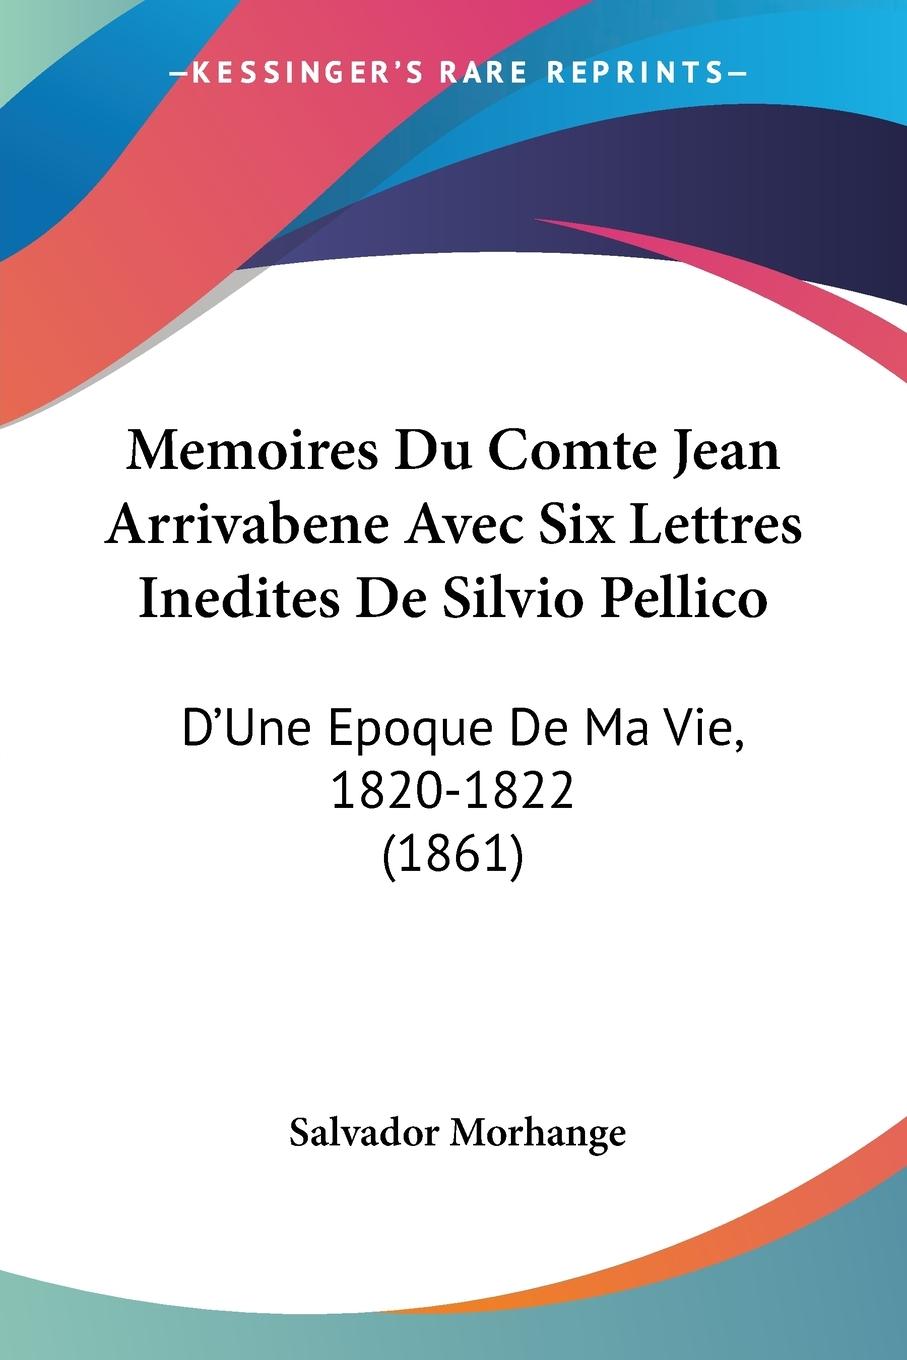 Memoires Du Comte Jean Arrivabene Avec Six Lettres Inedites De Silvio Pellico - Morhange, Salvador